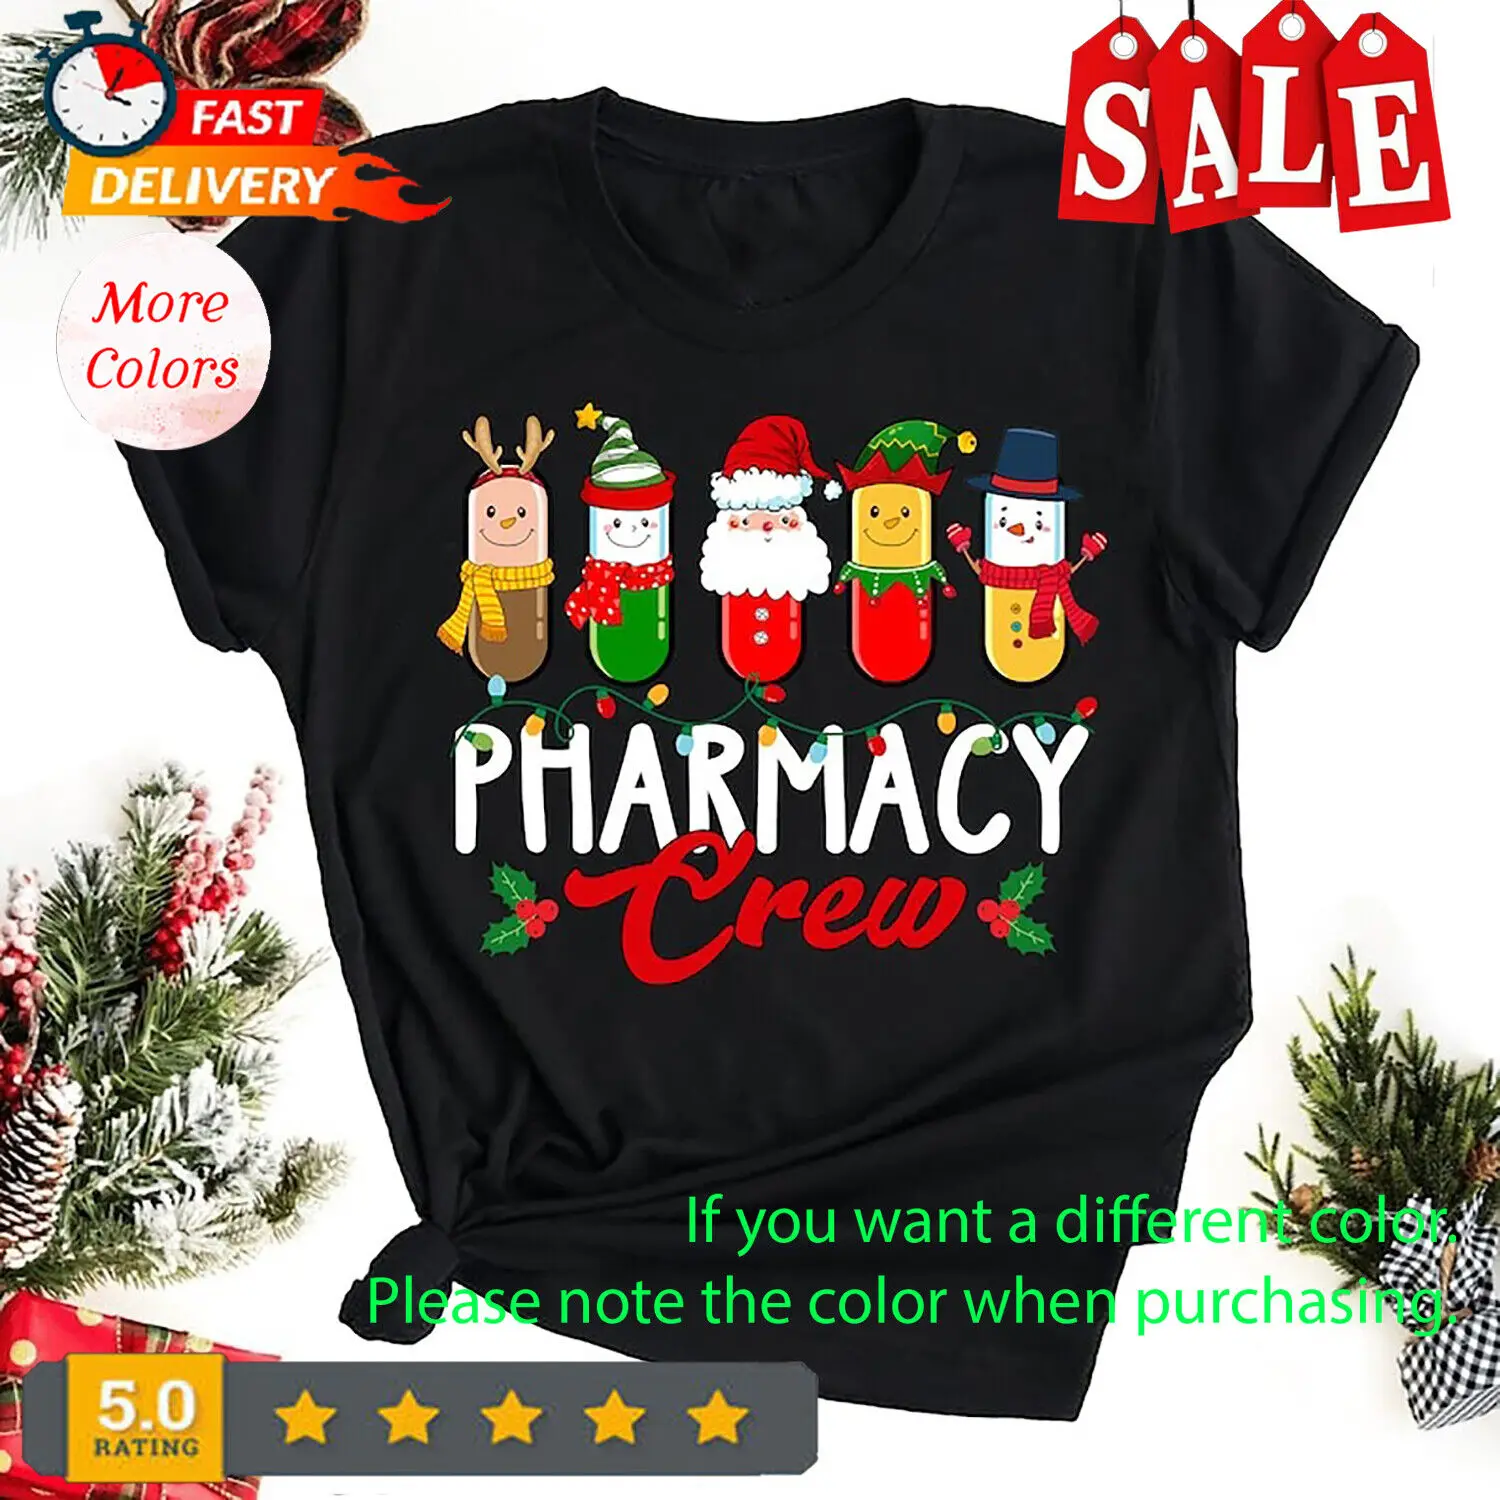 Vaistinės įgulos marškinėliai, vaistininko marškinėliai, vaistinės techniko marškinėliai, Kalėdų širšės